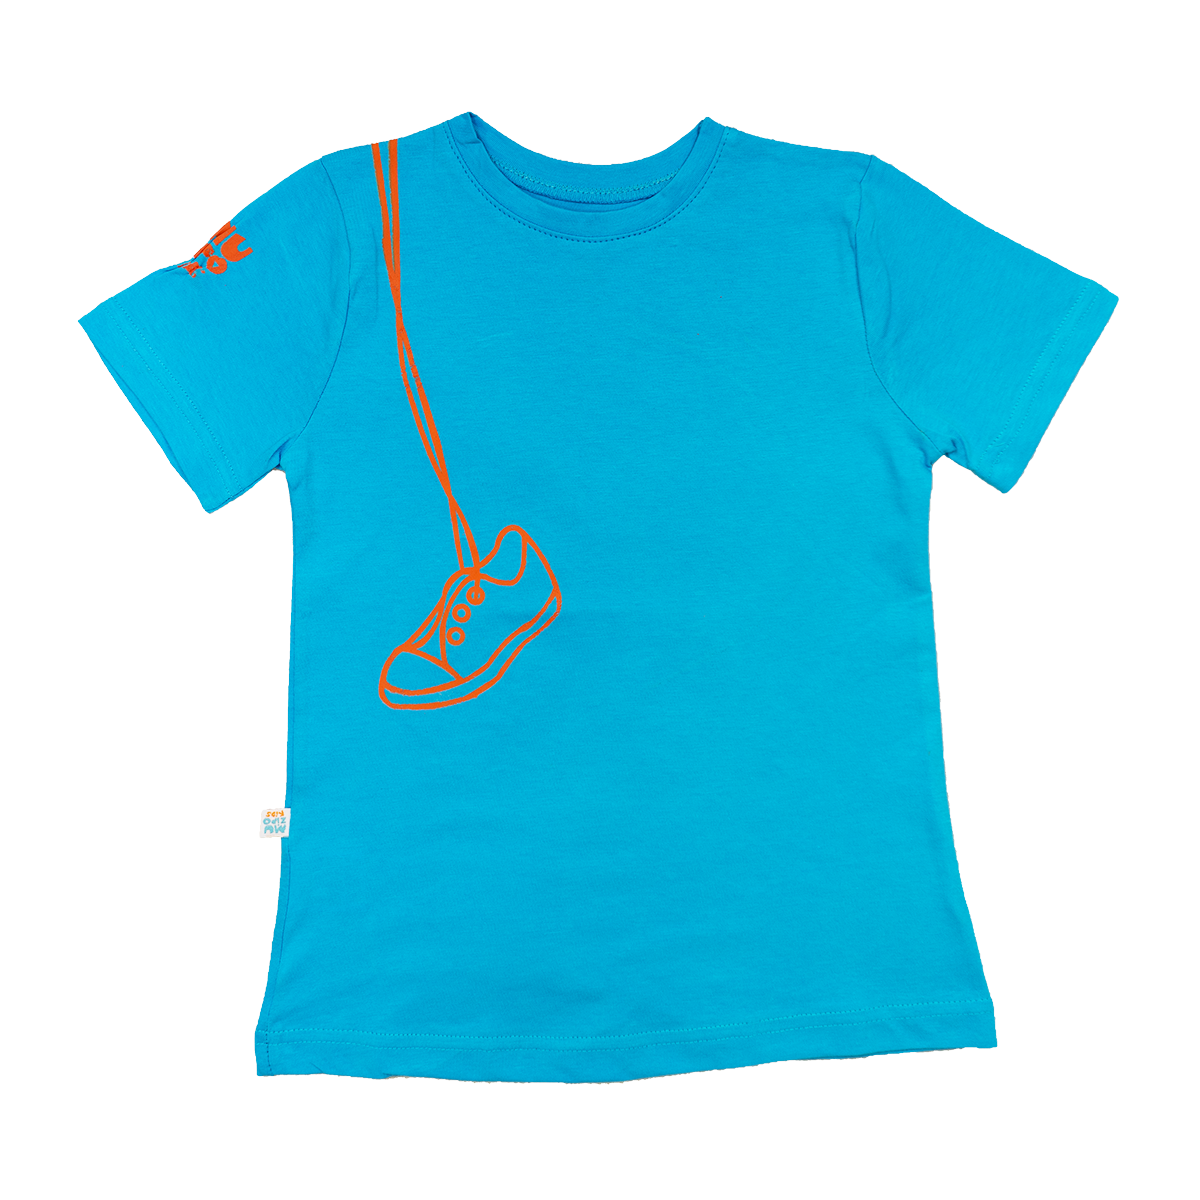 Muzipo Kids Unisex Çocuk Kısa Kollu Standart Baskılı Mavi T-Shirt/Tişört